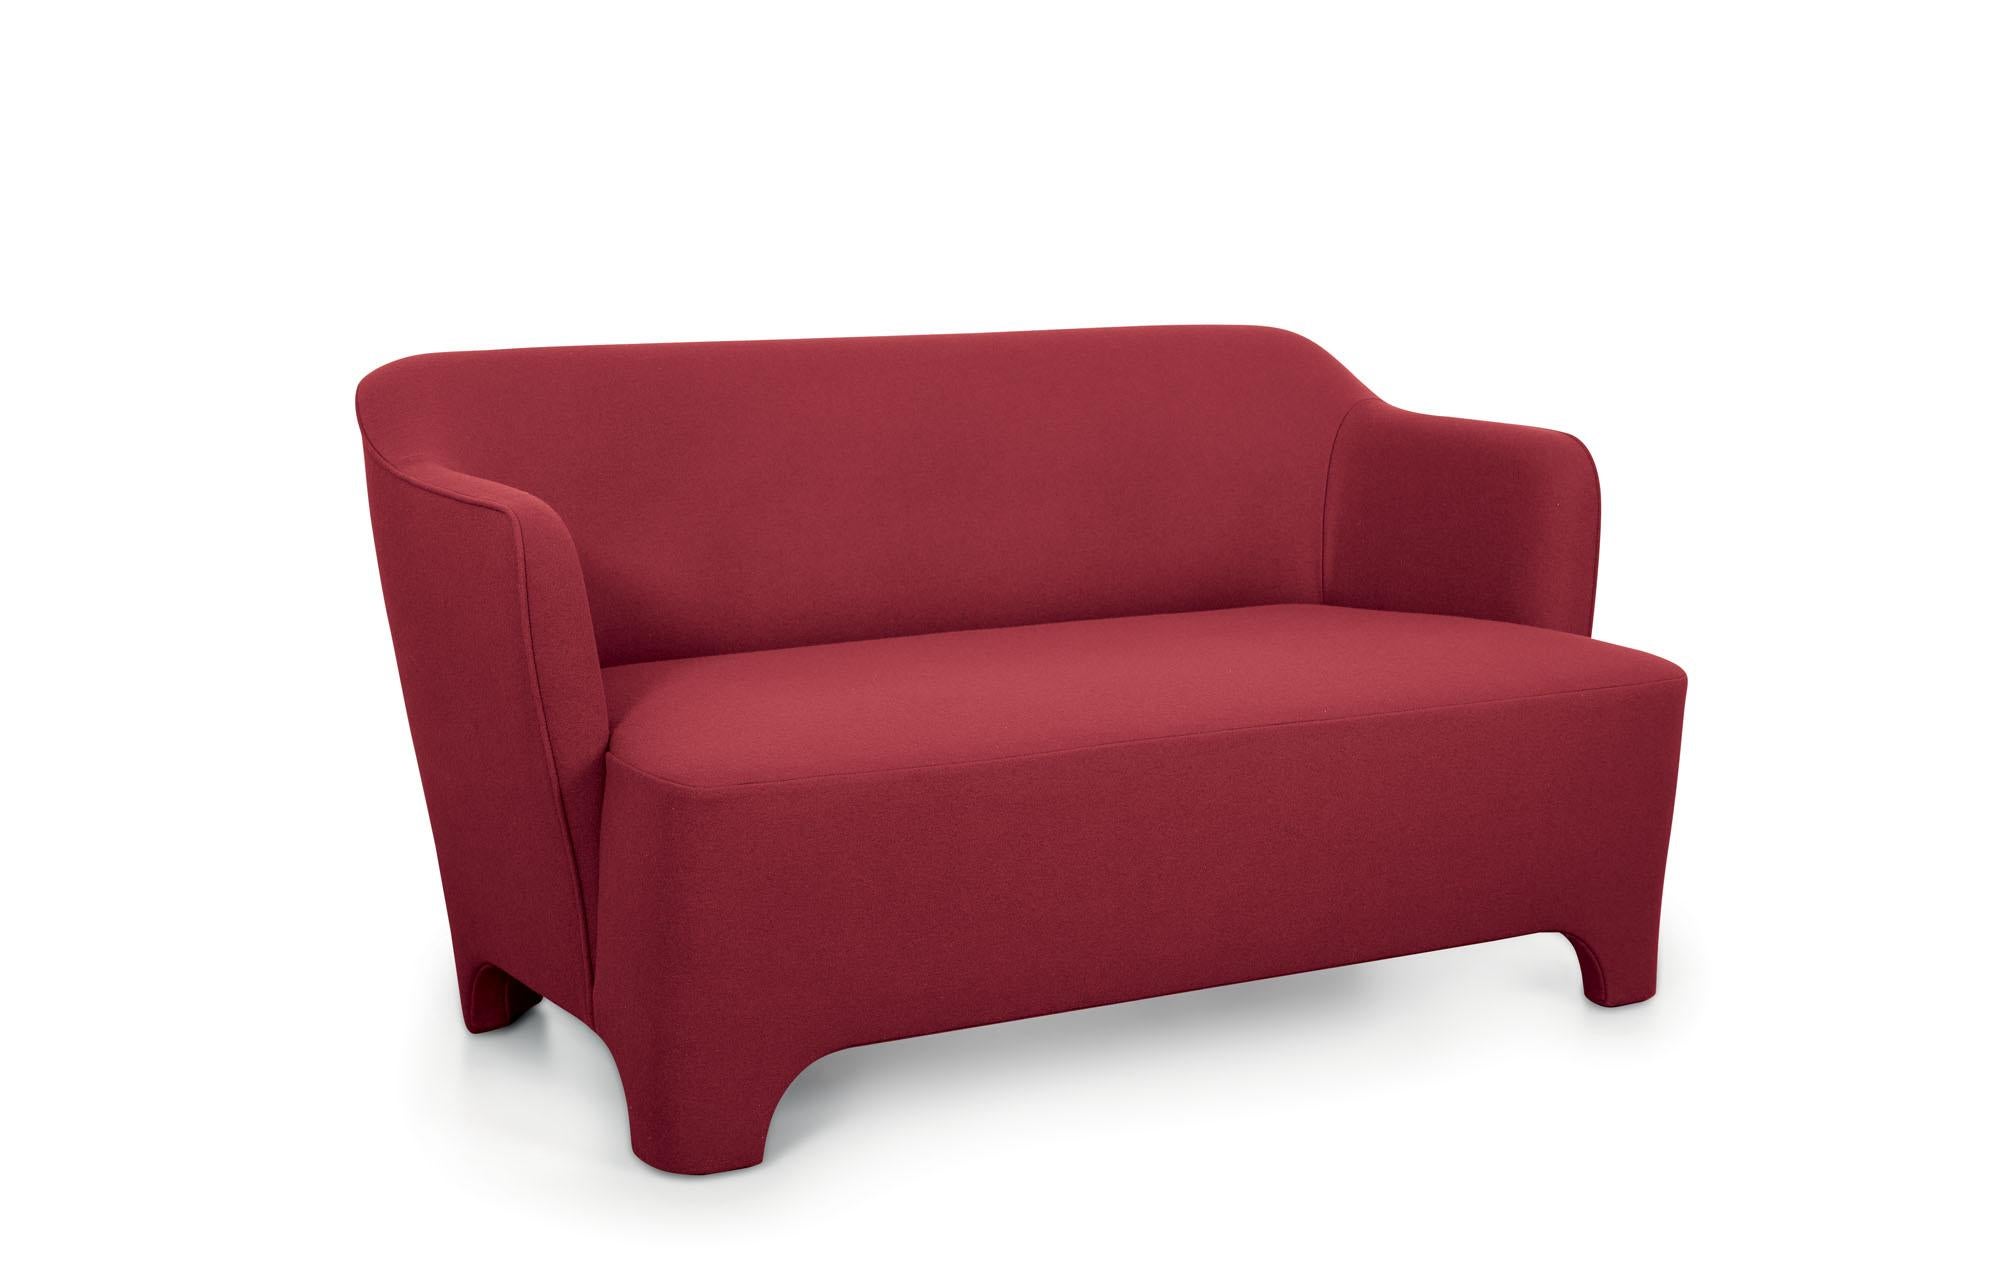 Fabric Truno Small Sofa in Felt Wool, by Corrado Corradi Dell'Acqua for TATO For Sale